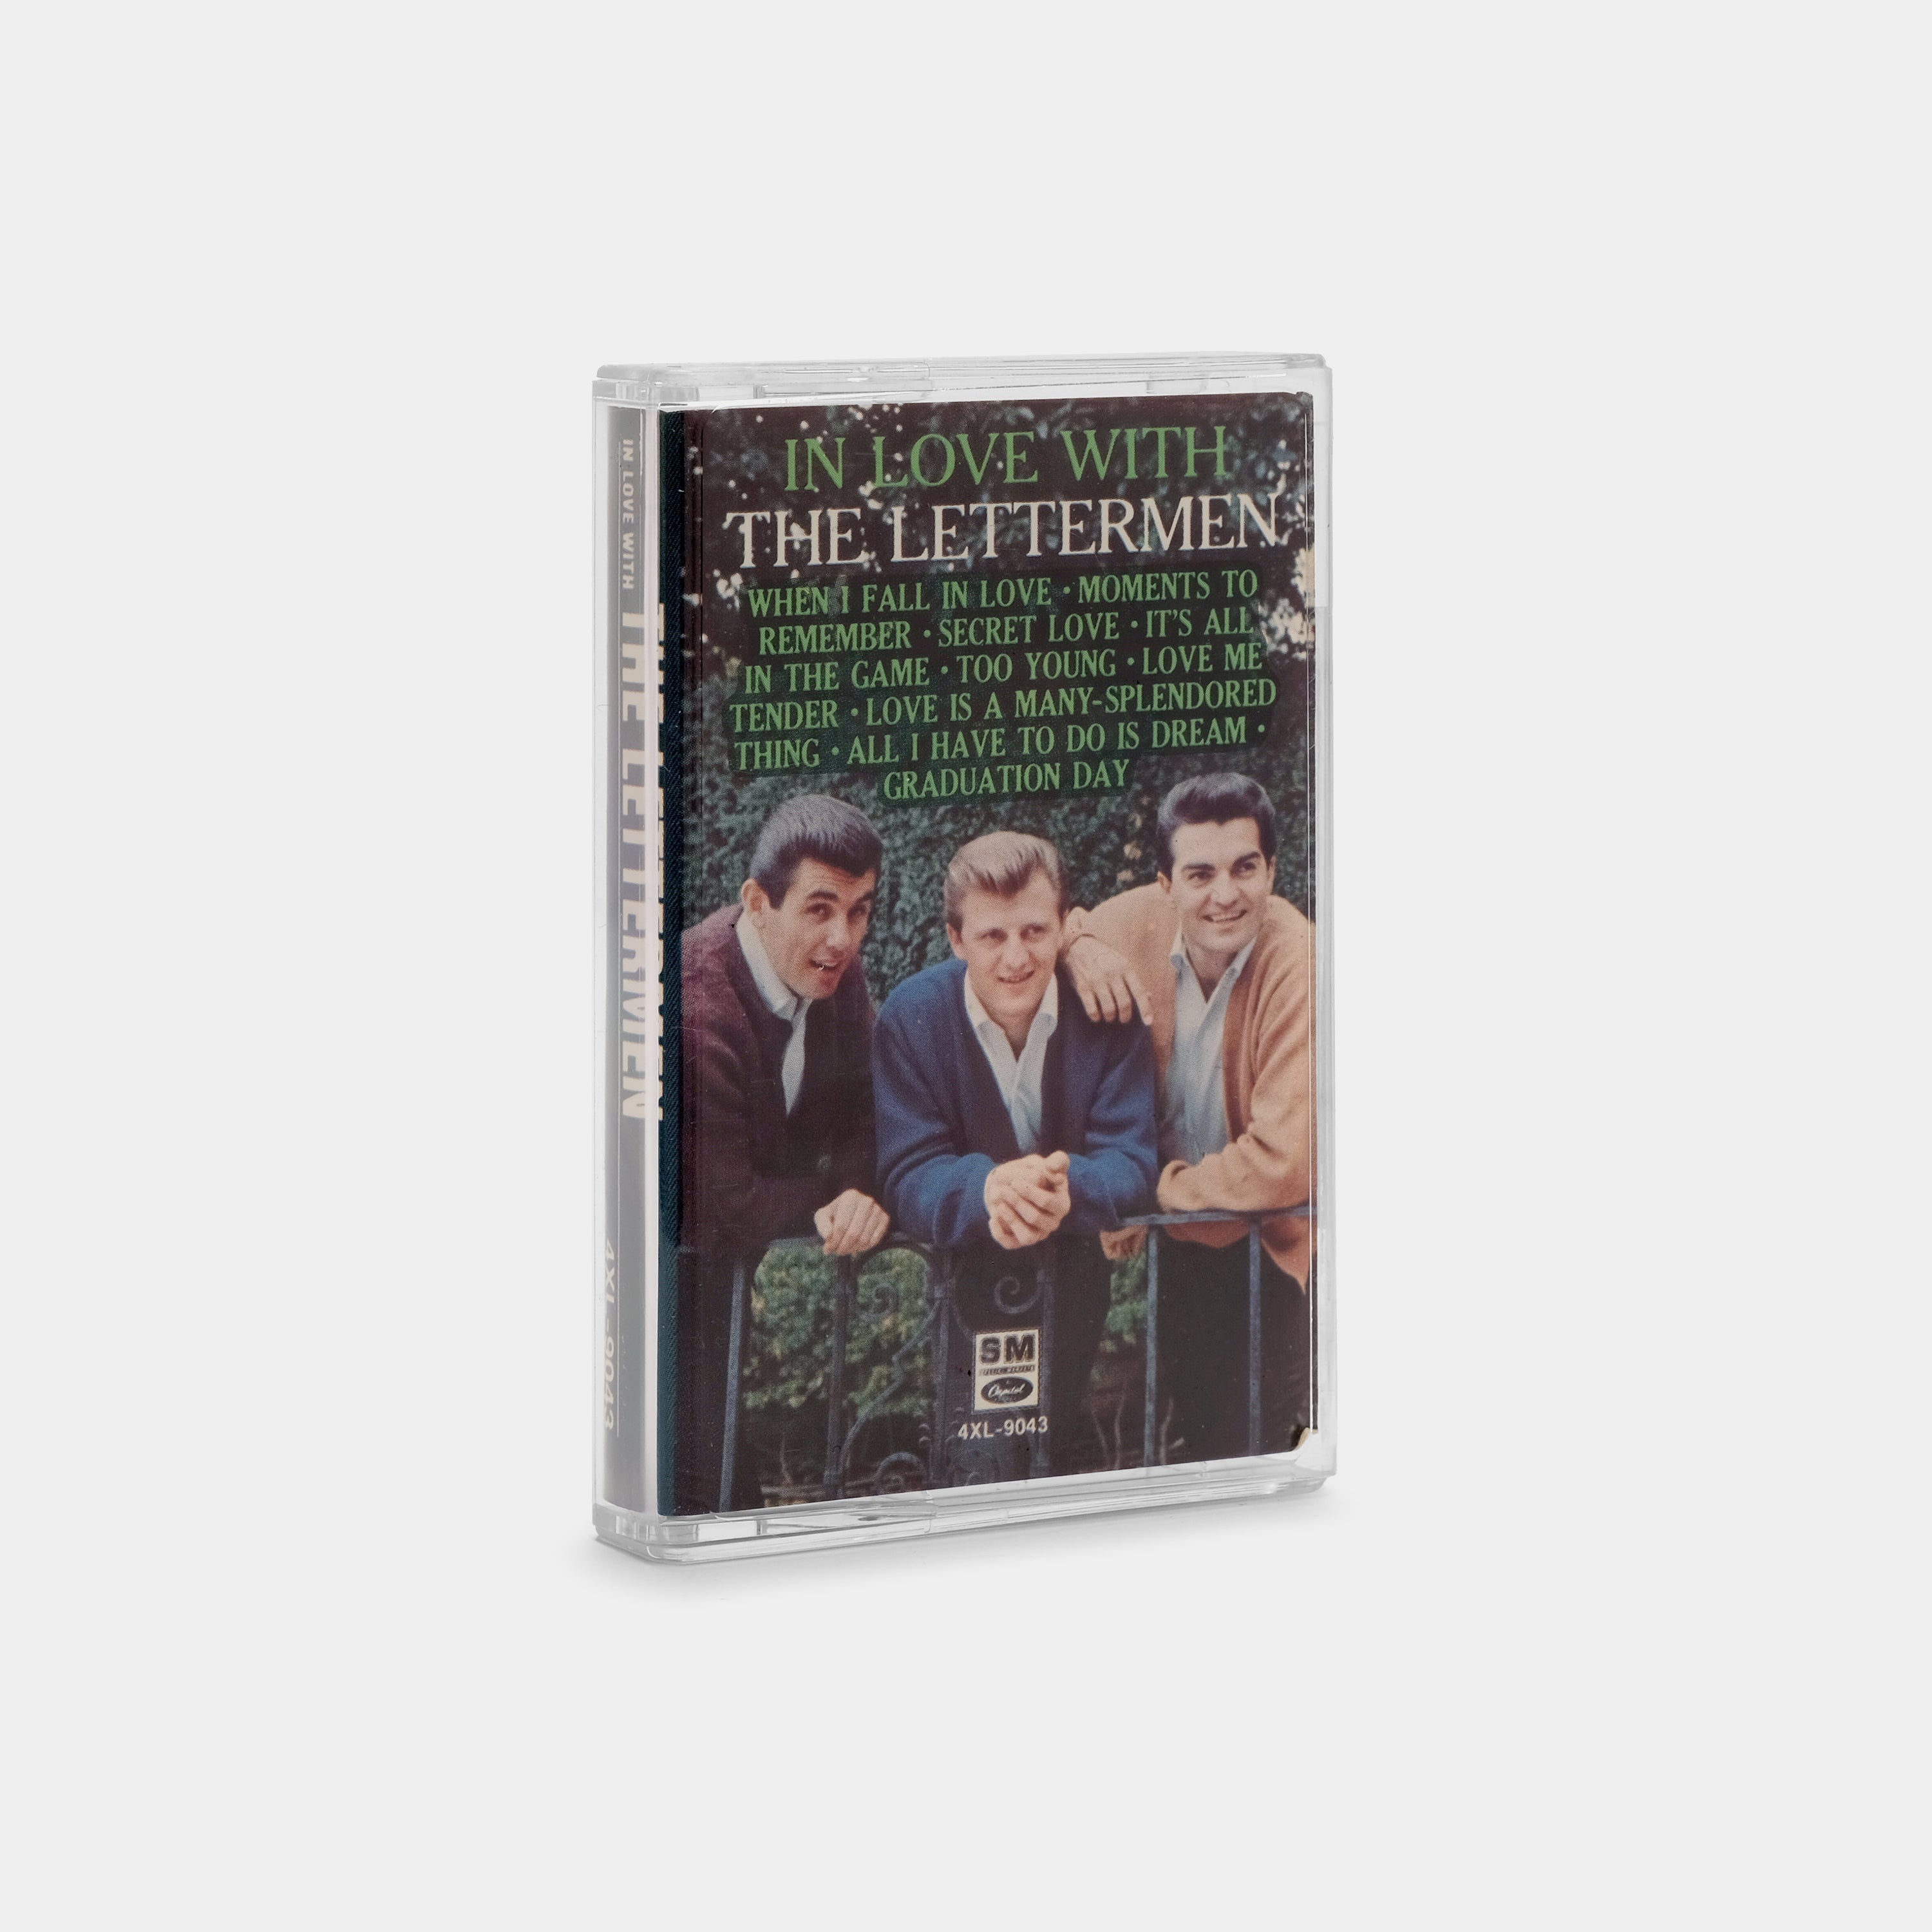 The Lettermen - In Love With The Lettermen Cassette Tape